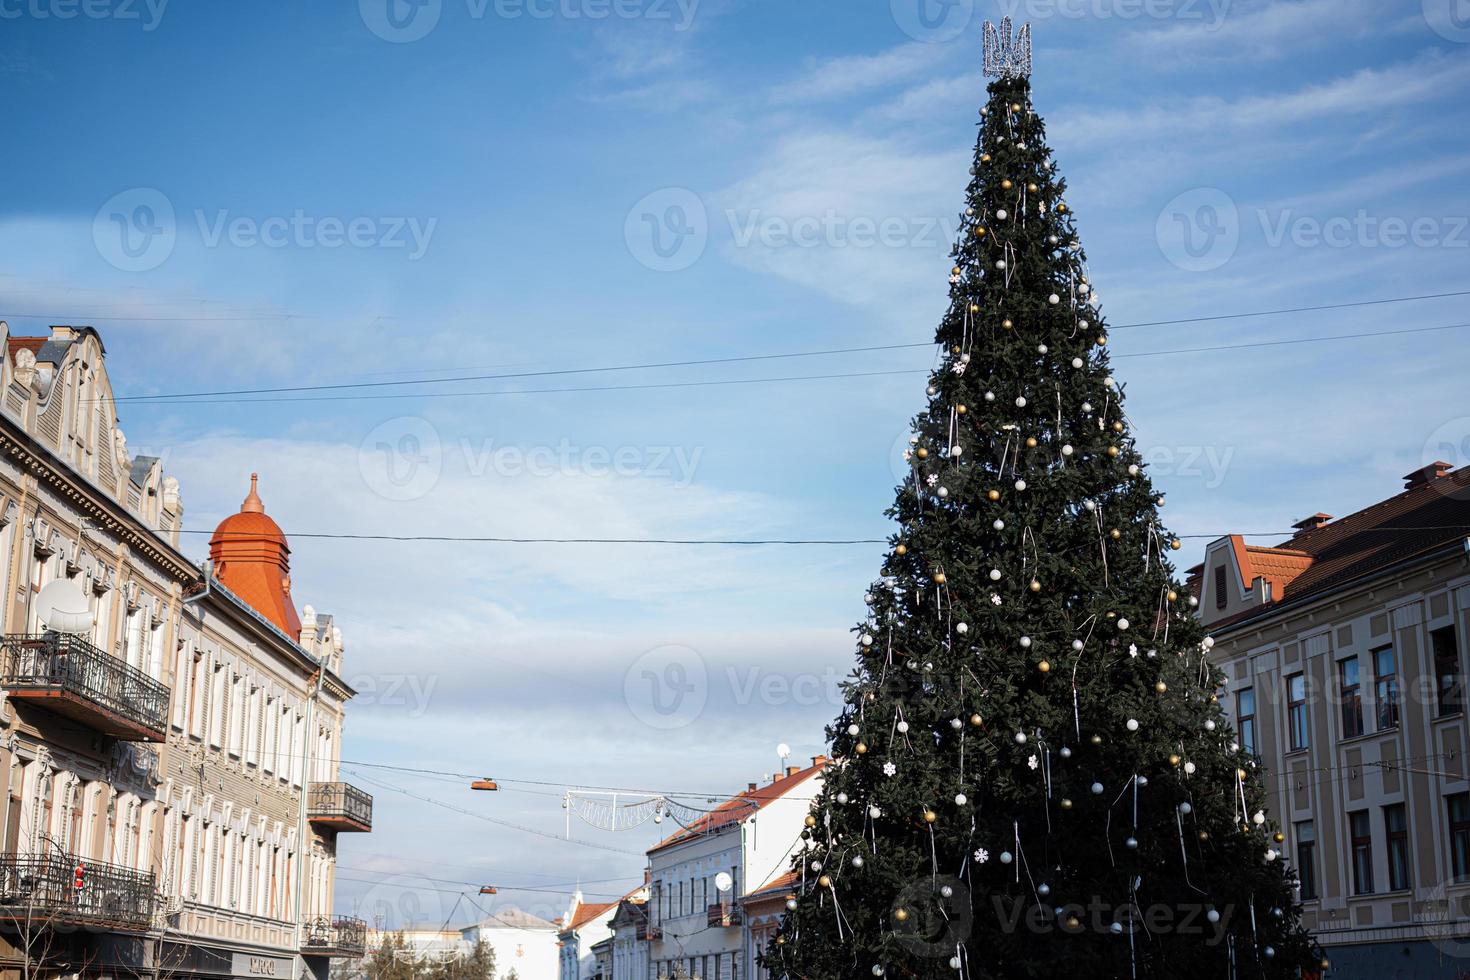 árvore de natal na praça principal da cidade uzhgorod, ucrânia. foto